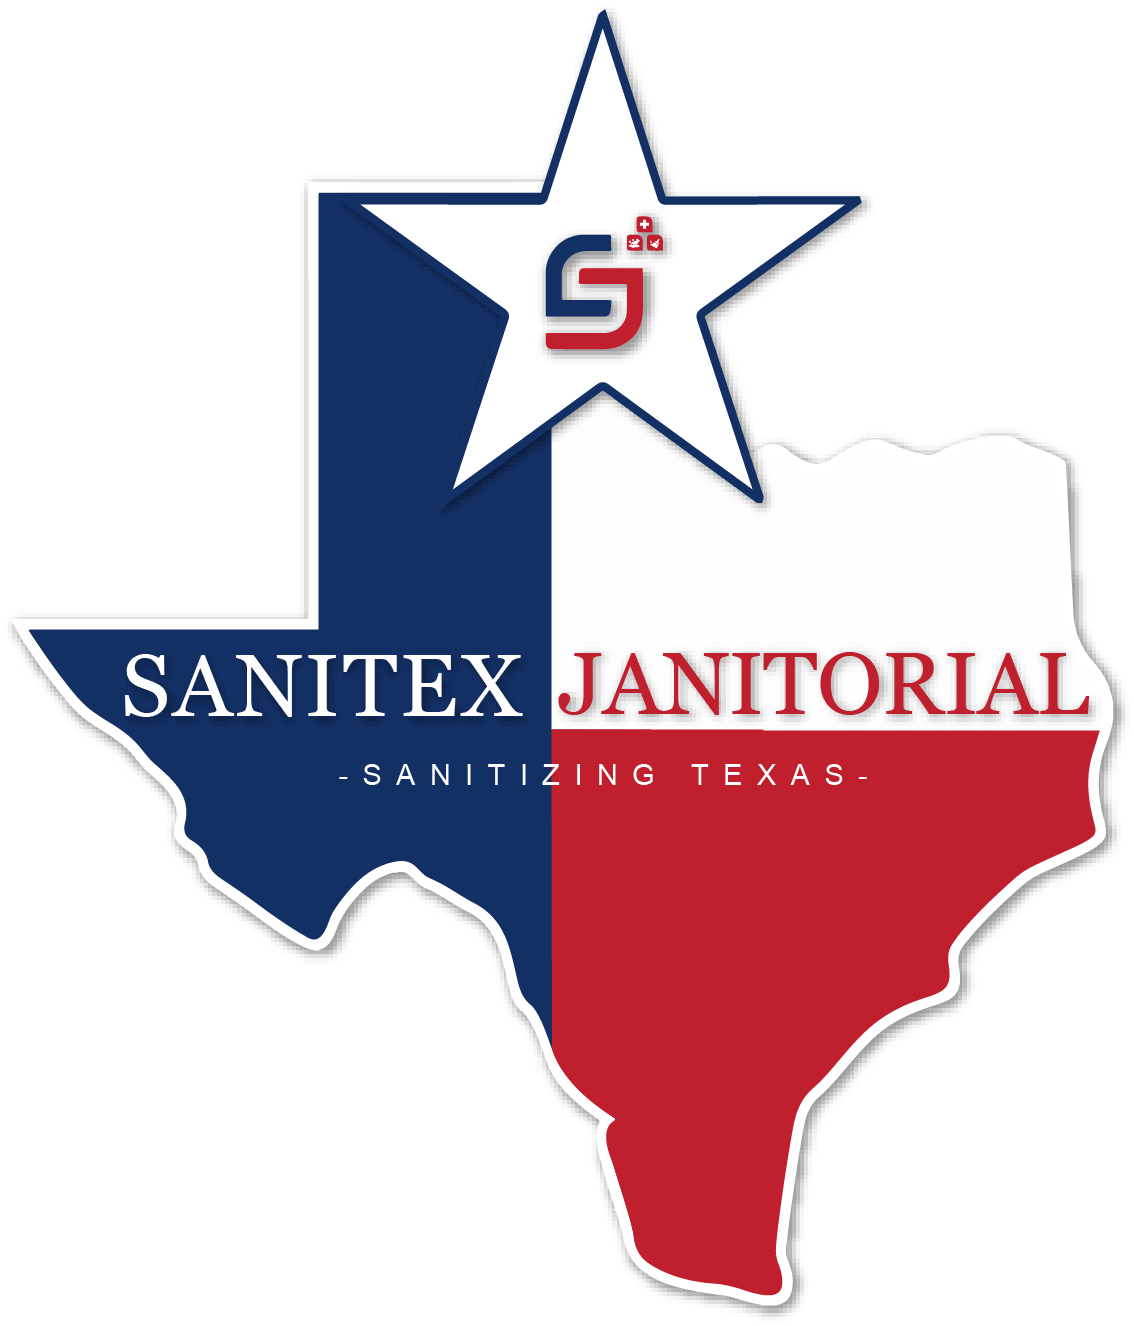 Sanitex Janitorial